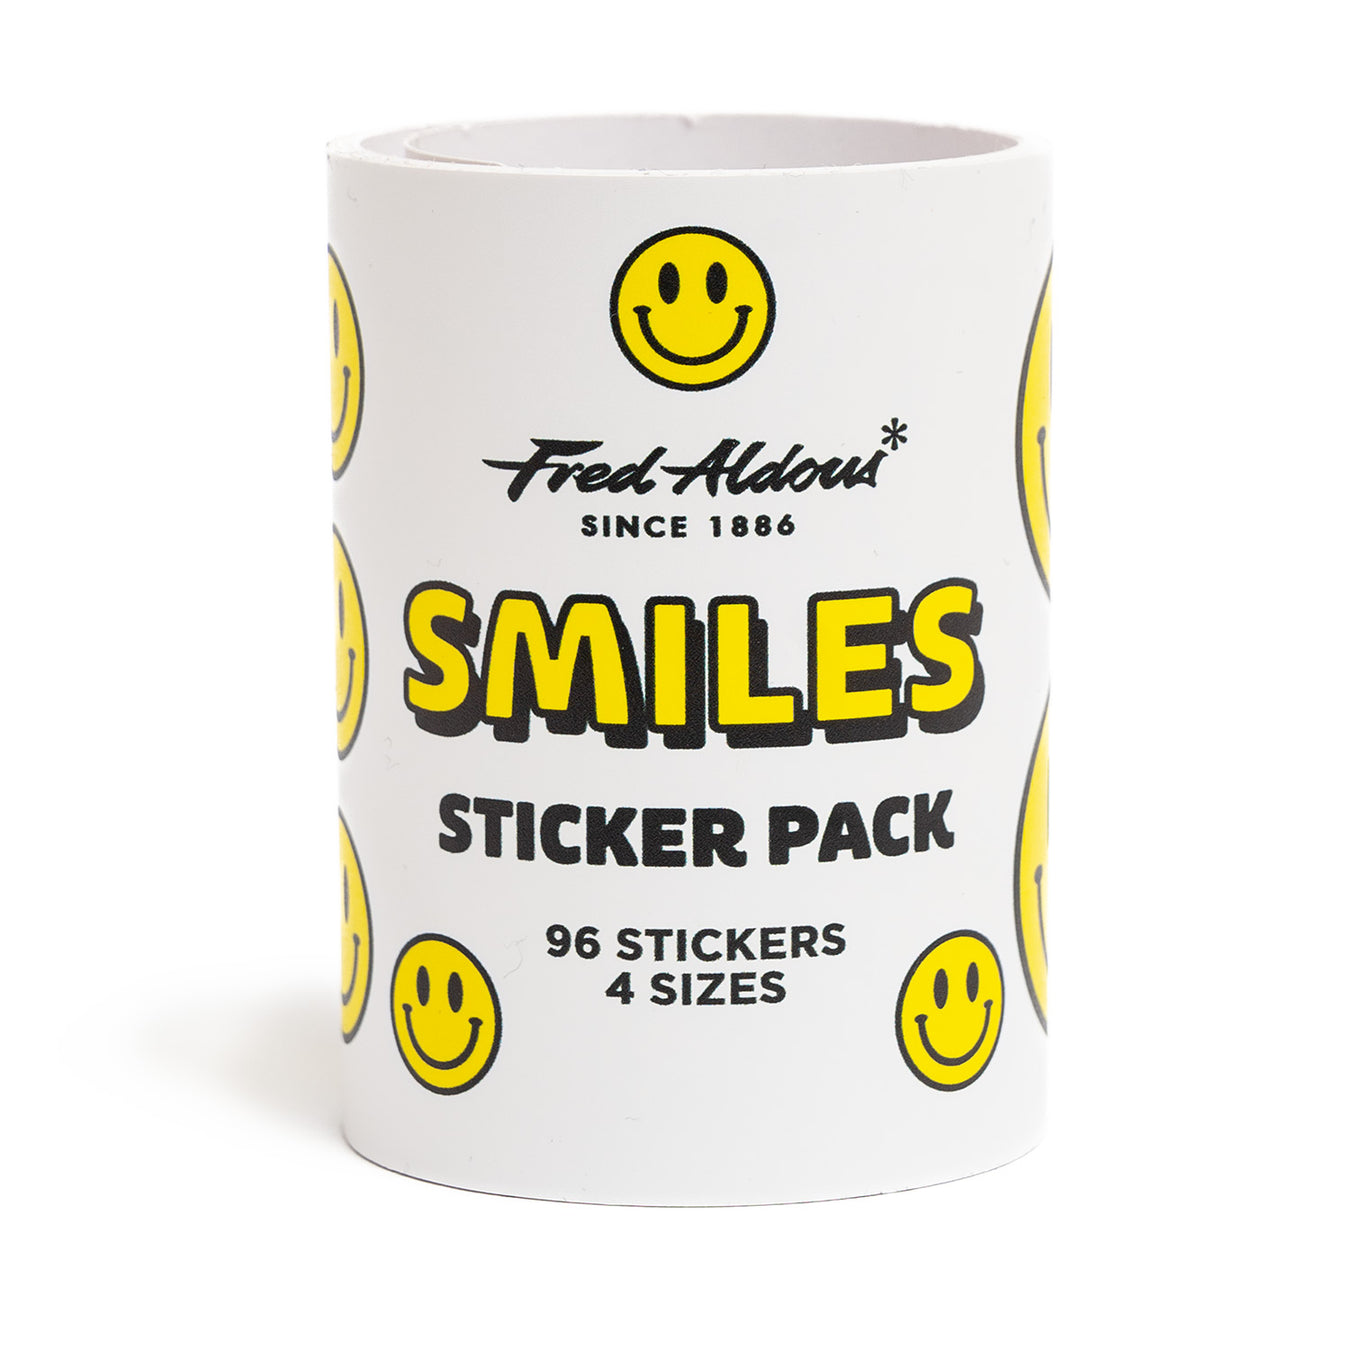 Fred Aldous Sticker Packs